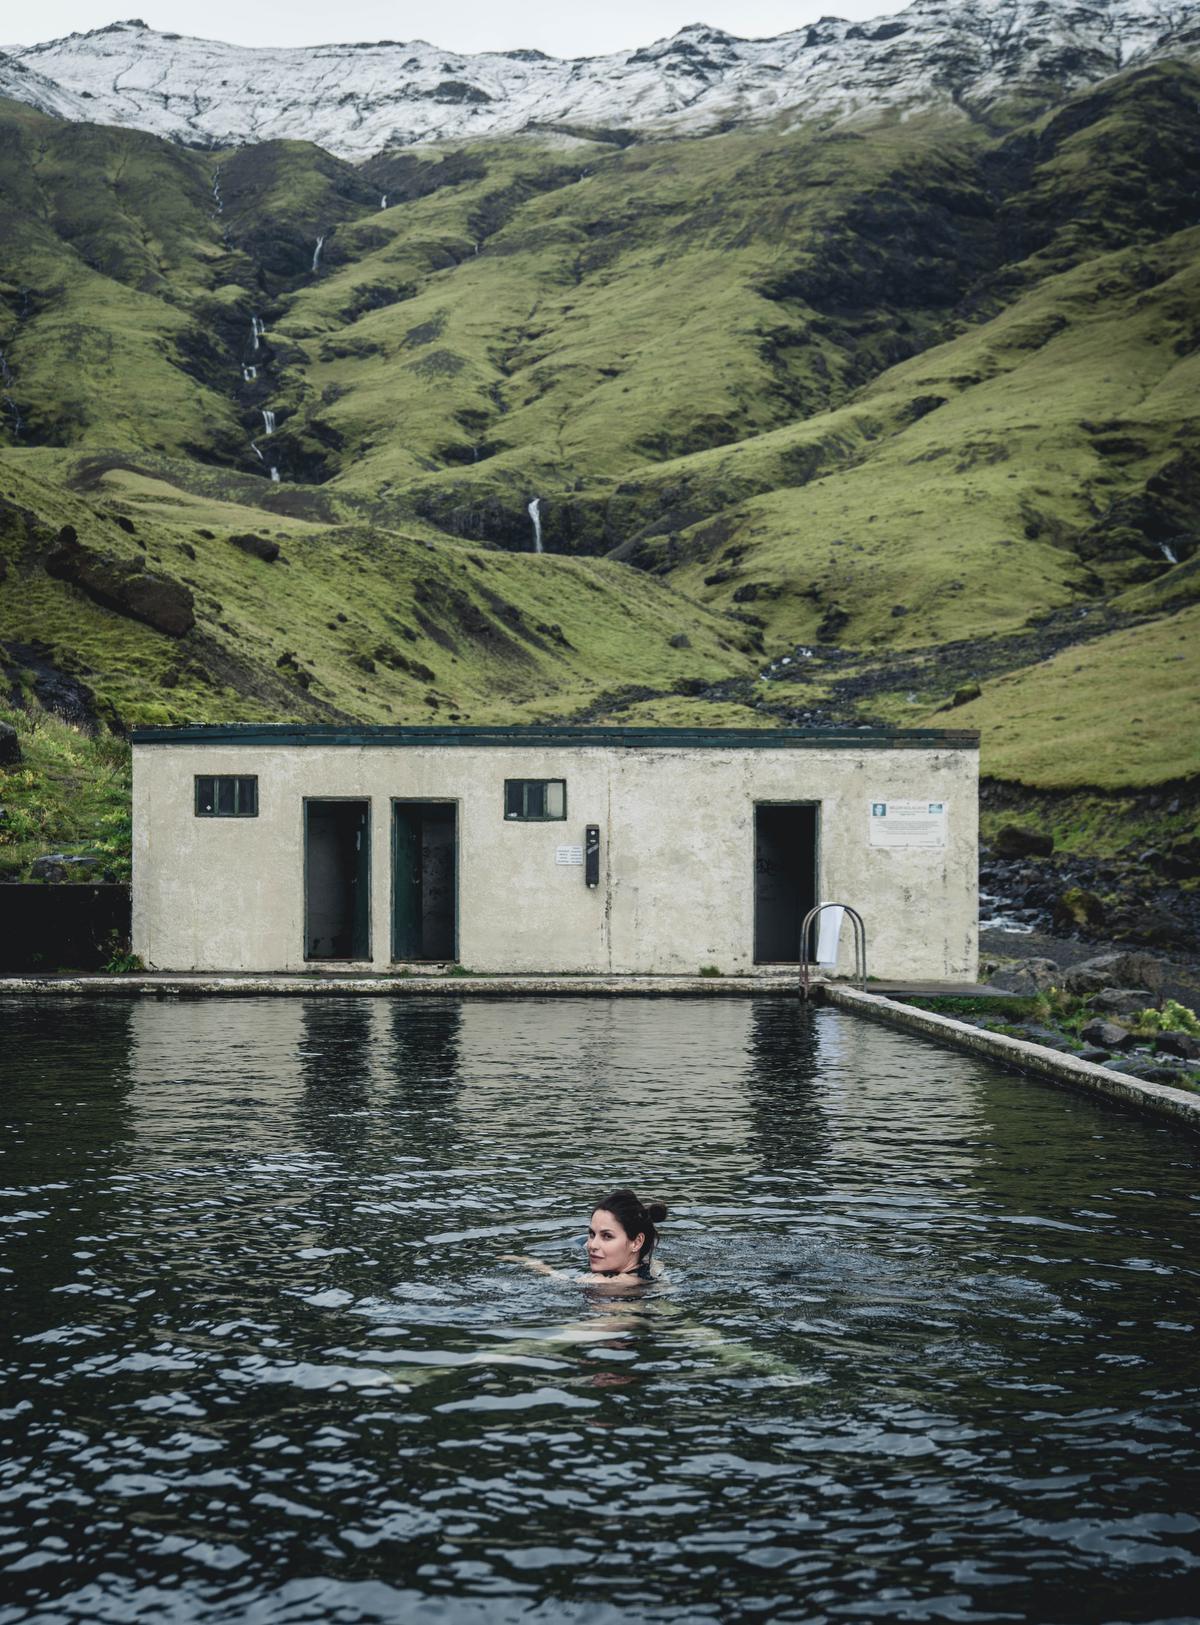 Seljavallalaug, het bekende oude geothermische buitenzwembad. (foto SB) ©sbedaux 